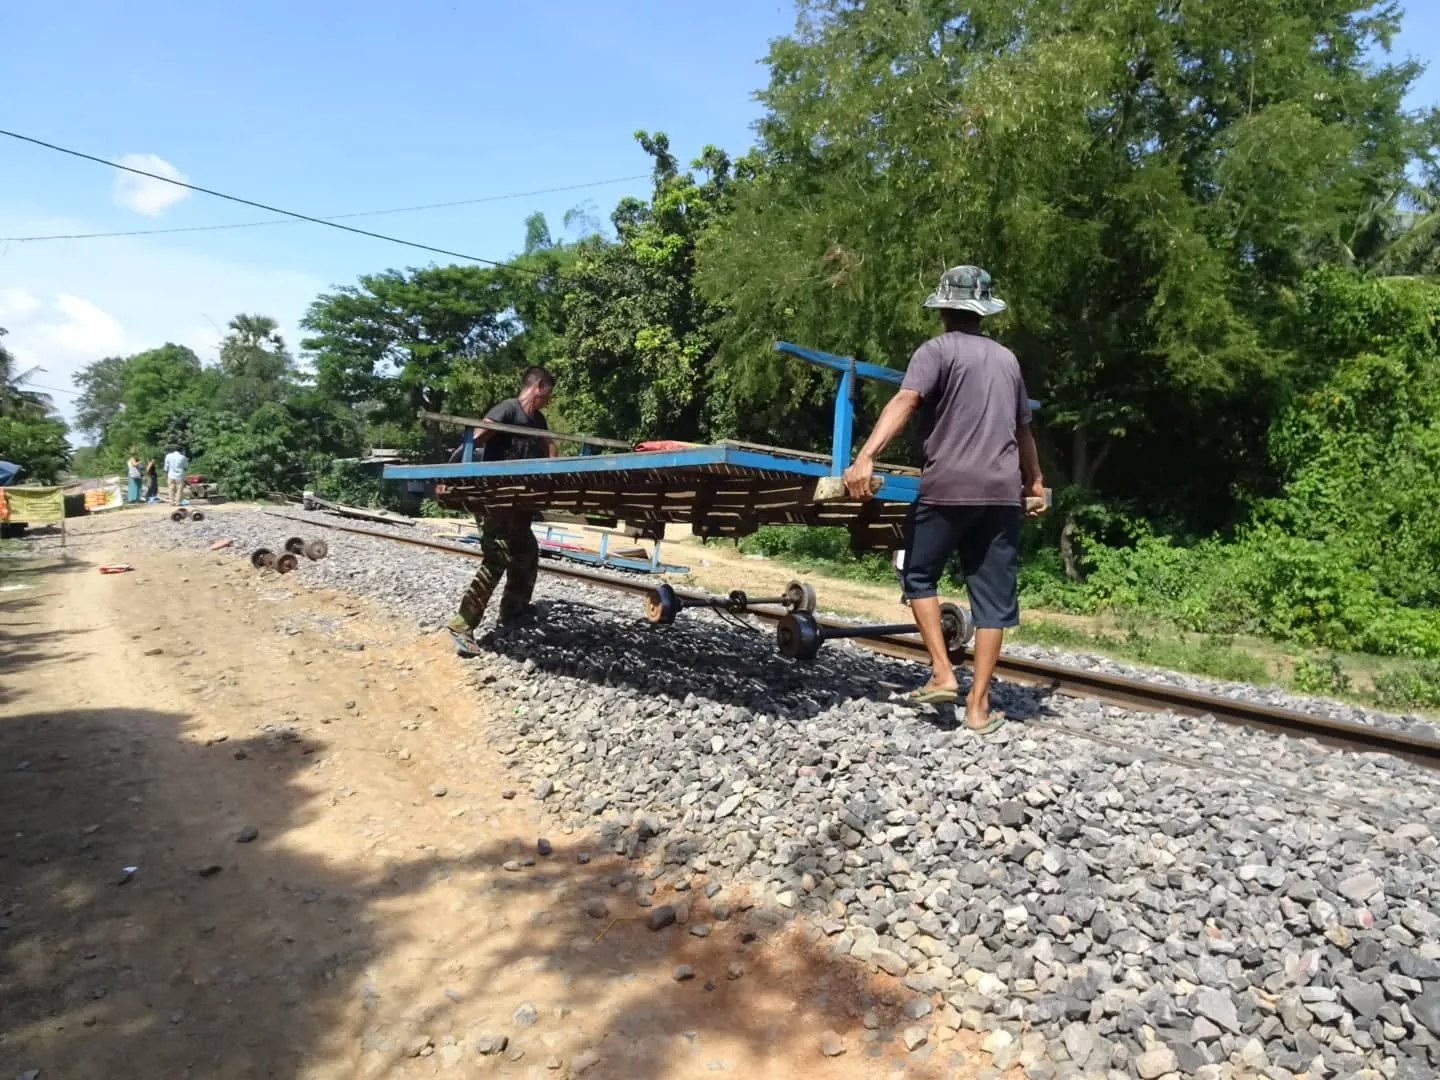 Cambodia: Battambang, Bat Caves and Bamboo Trains